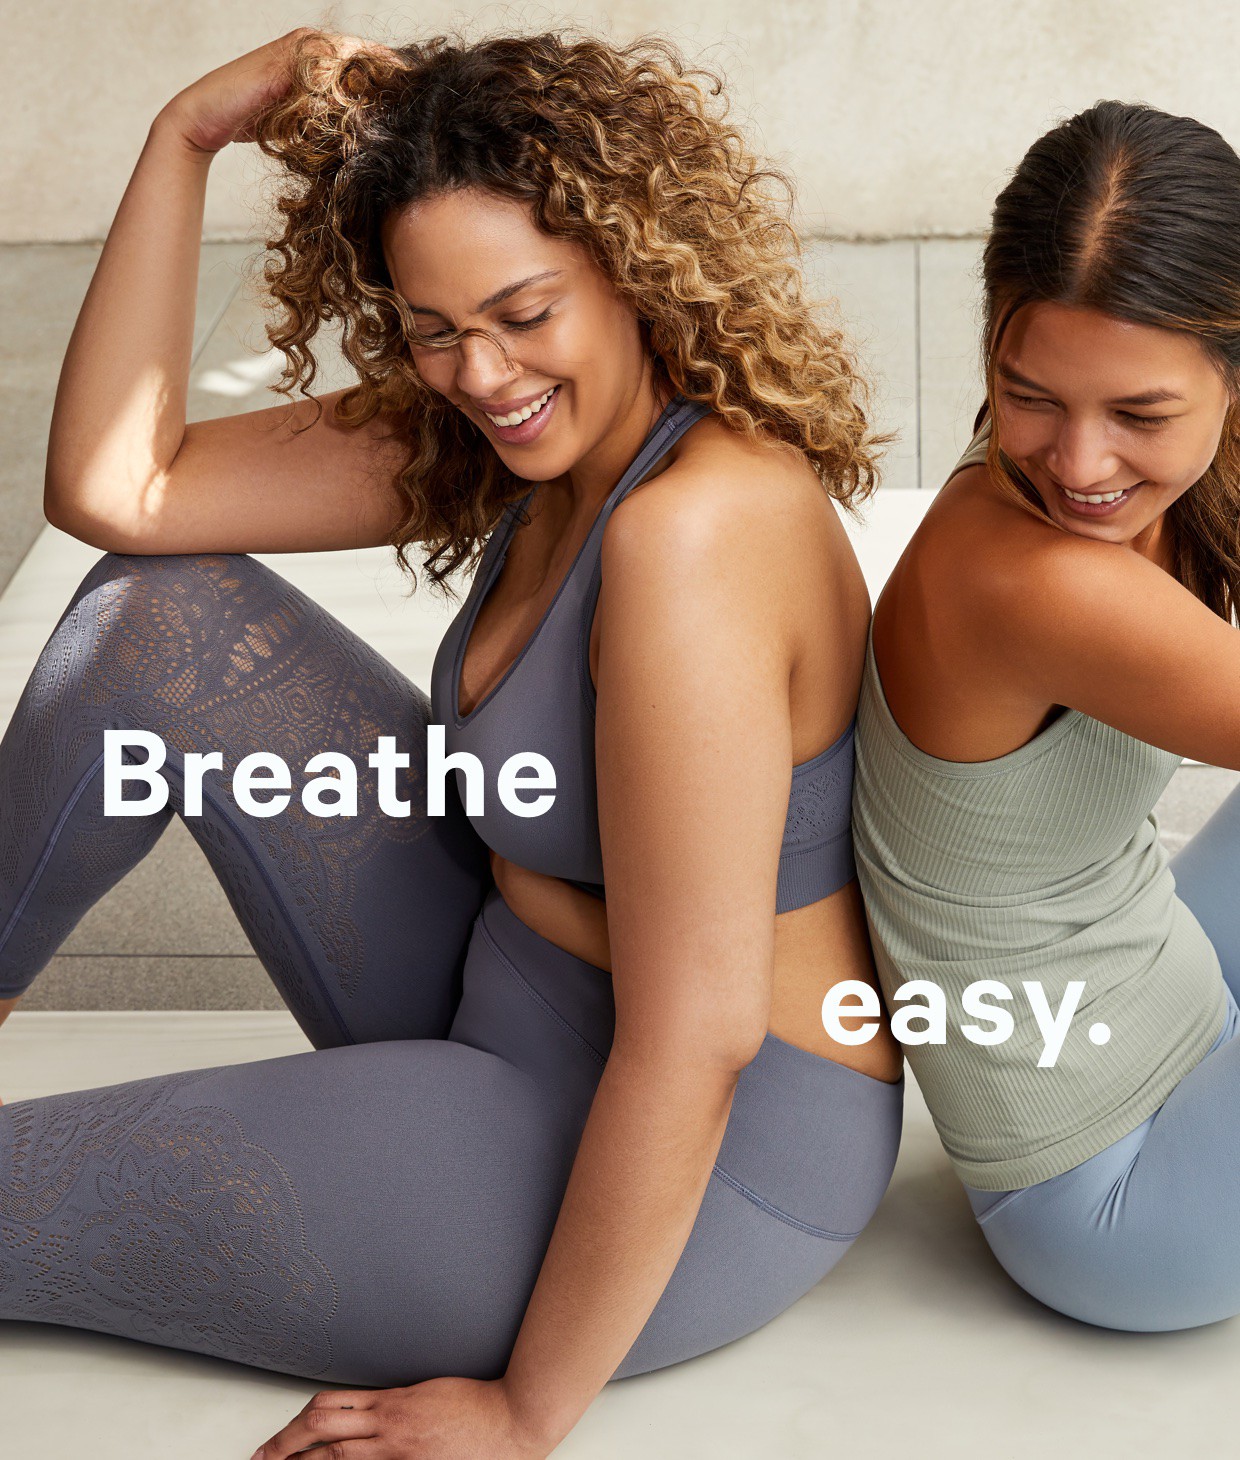 Breathe easy.